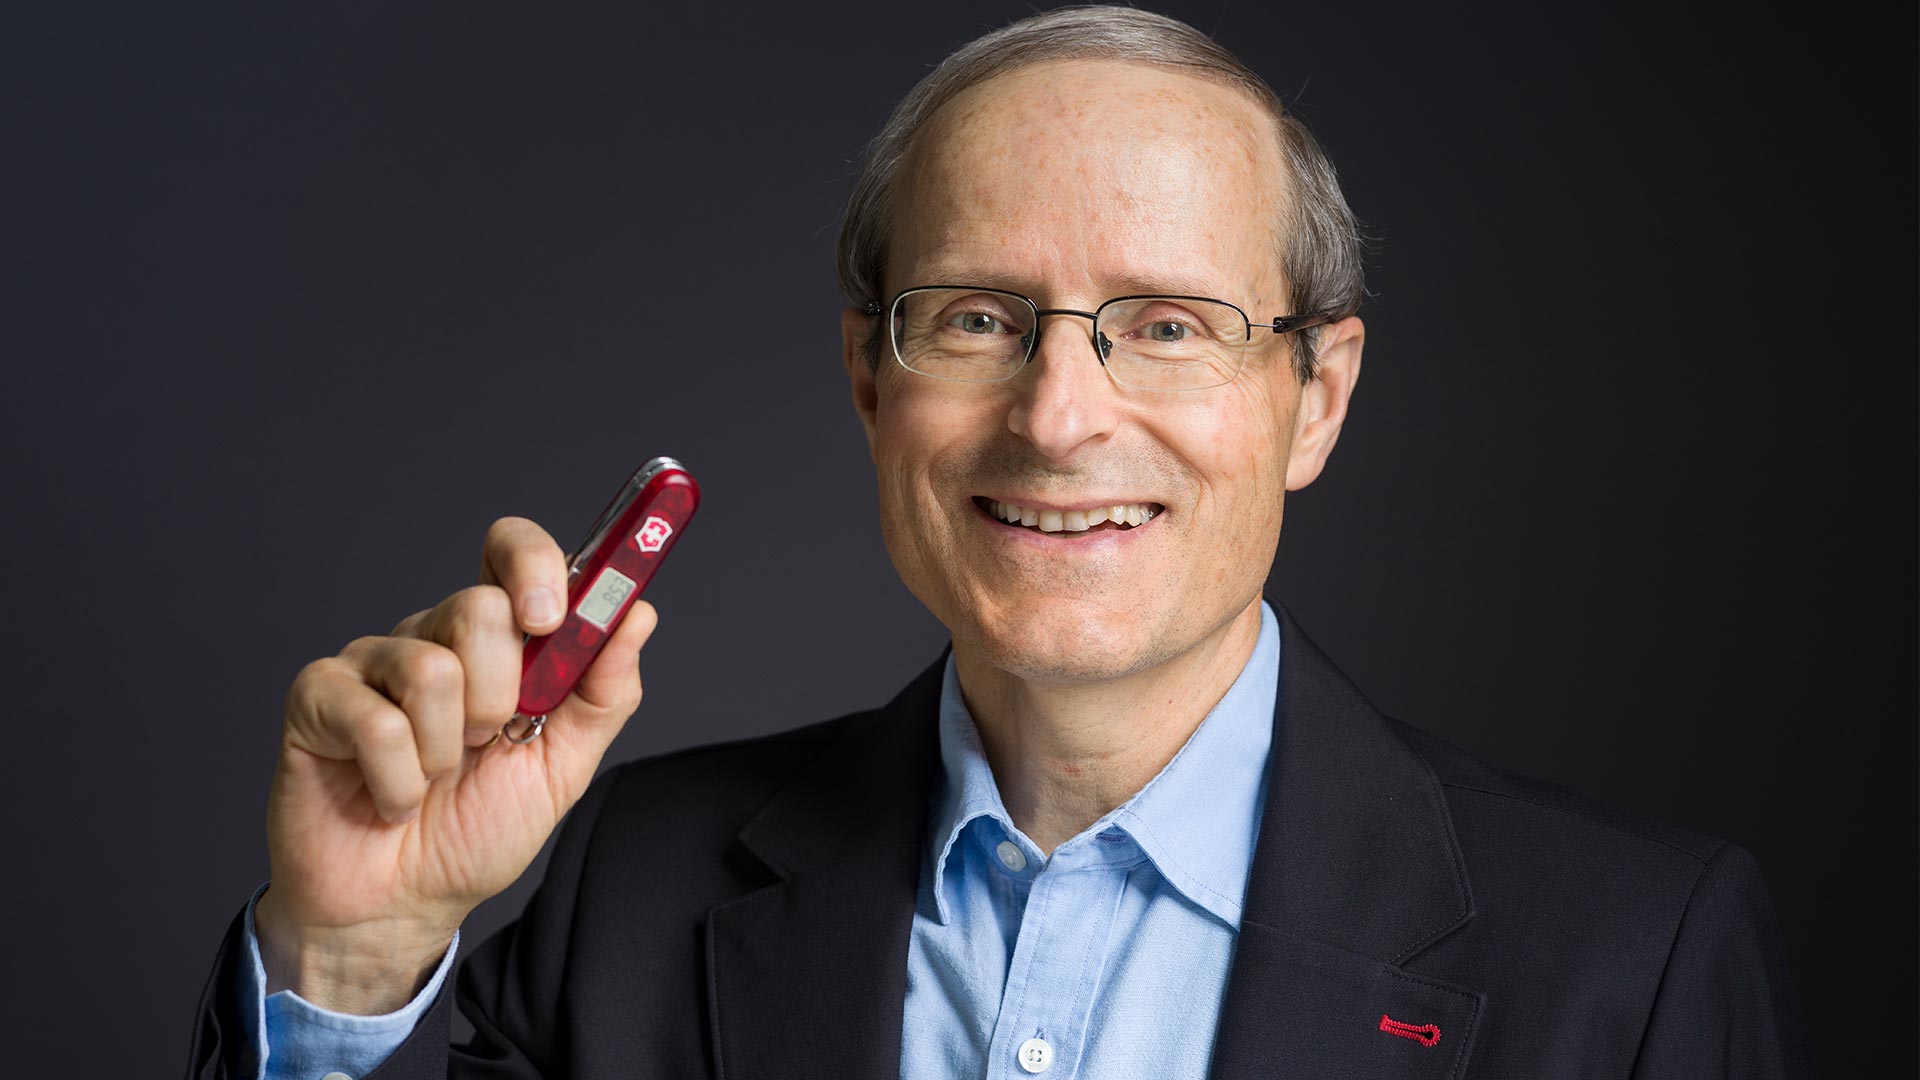 Image de Carl Elsener, CEO de Victorinox, avec un couton suisse à la main.